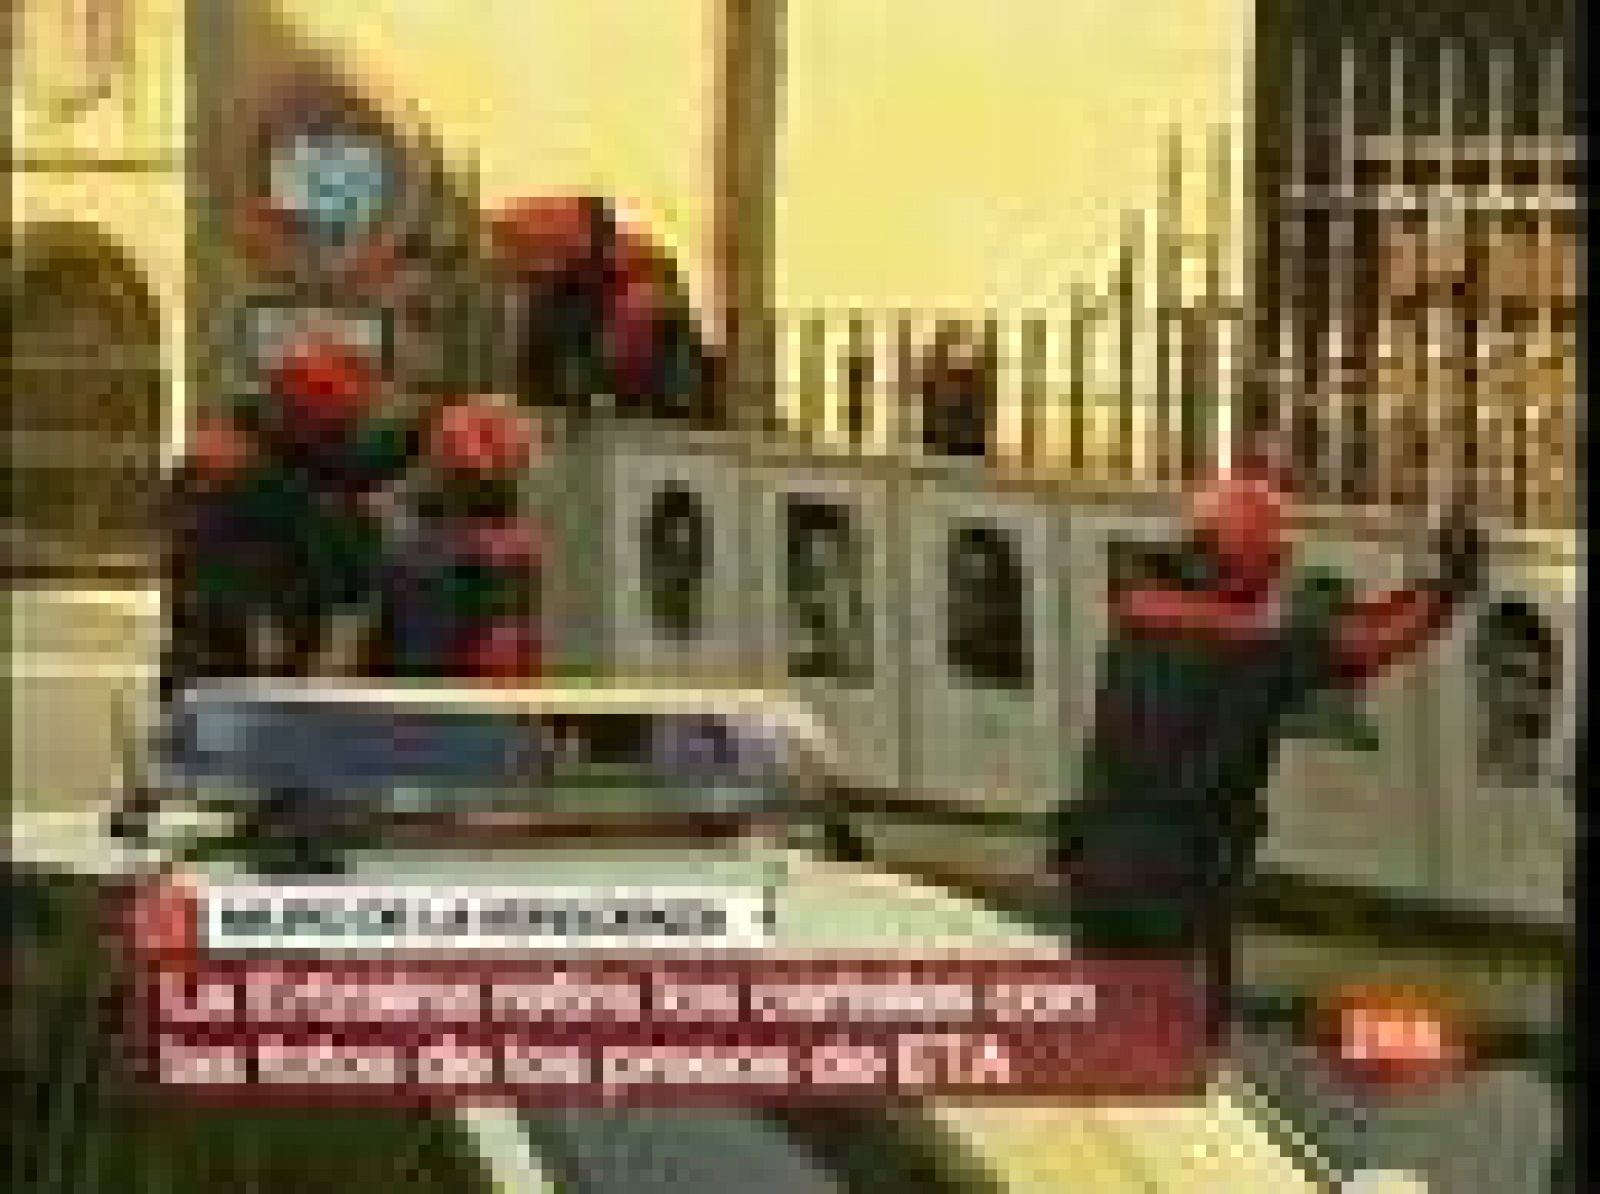 Agentes de la Ertzaintza retiran por orden de la Fiscalía las fotografías de etarras que se exhibían en el muro de la vergüenza en Mondragón (País Vasco).